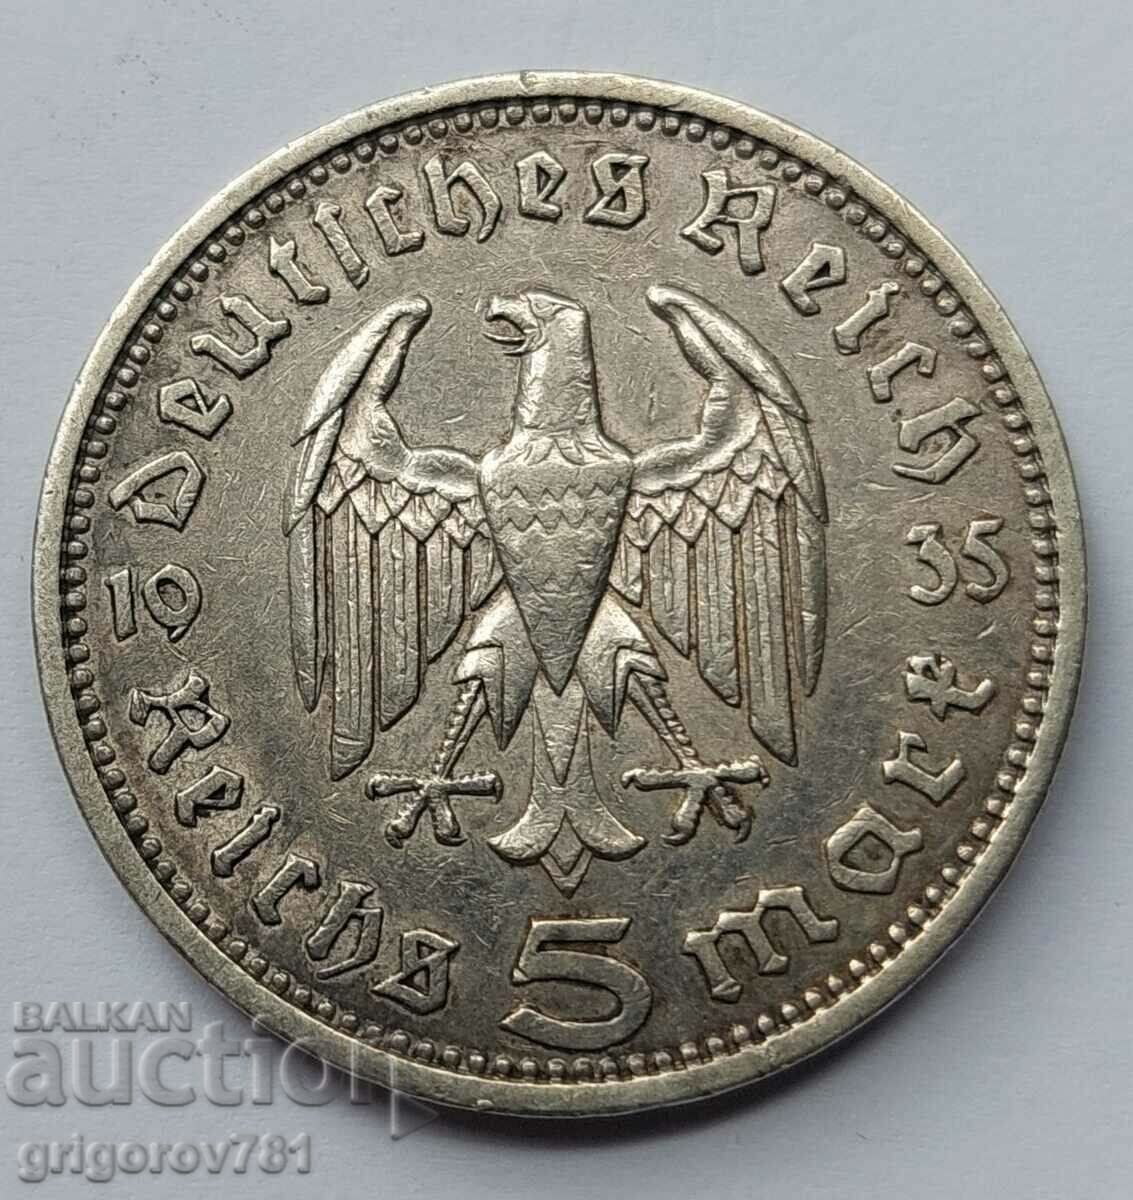 5 Mark Silver Γερμανία 1935 A III Reich Silver Coin 78